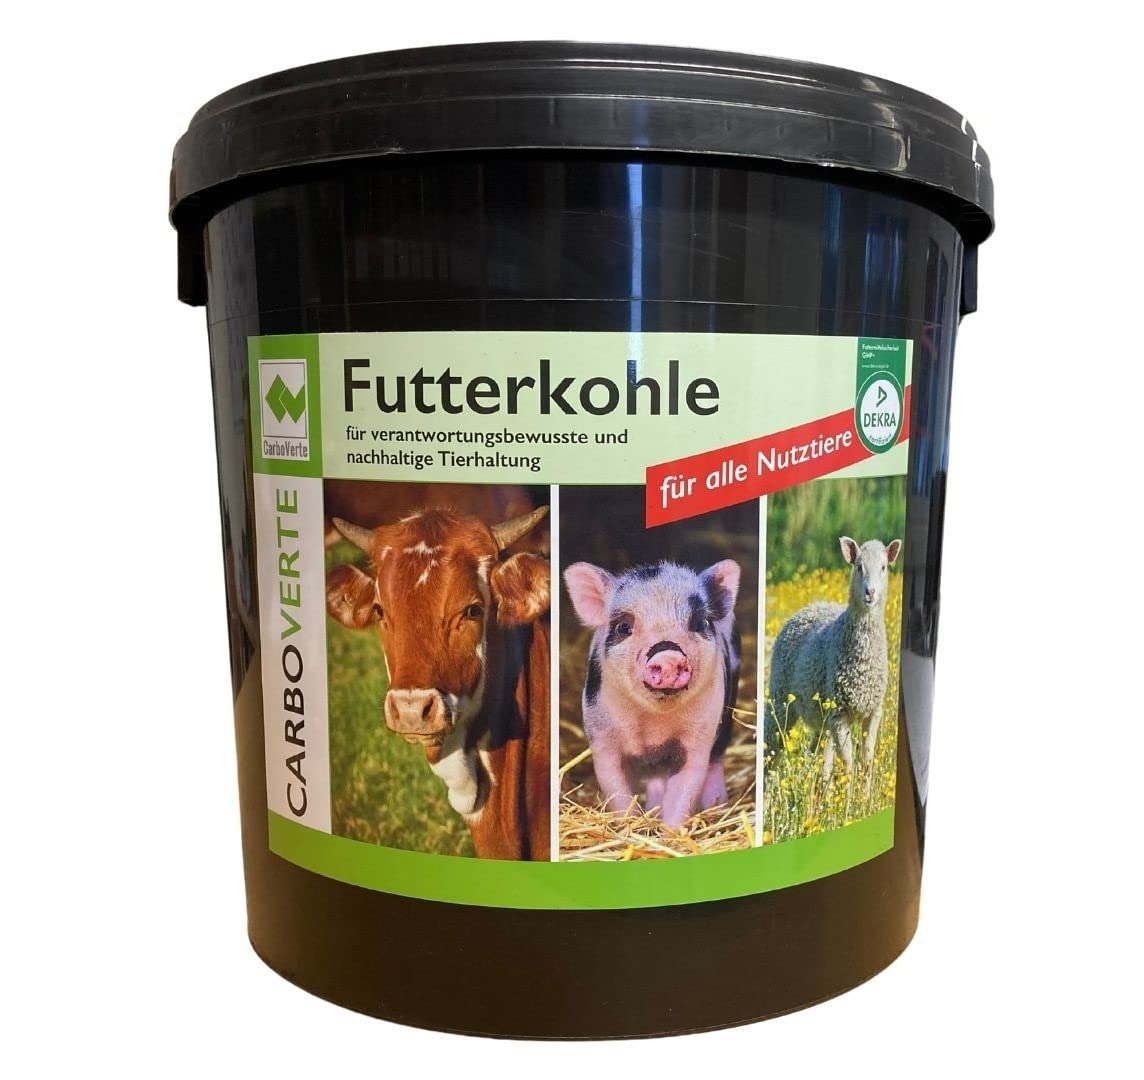 3,5 kg CarboVerte Futterkohle für Pferde, Rinder, Schweine und Geflügel, nach GMP+ FSA gesichert, 100% pflanzliche Kohle, staubfrei